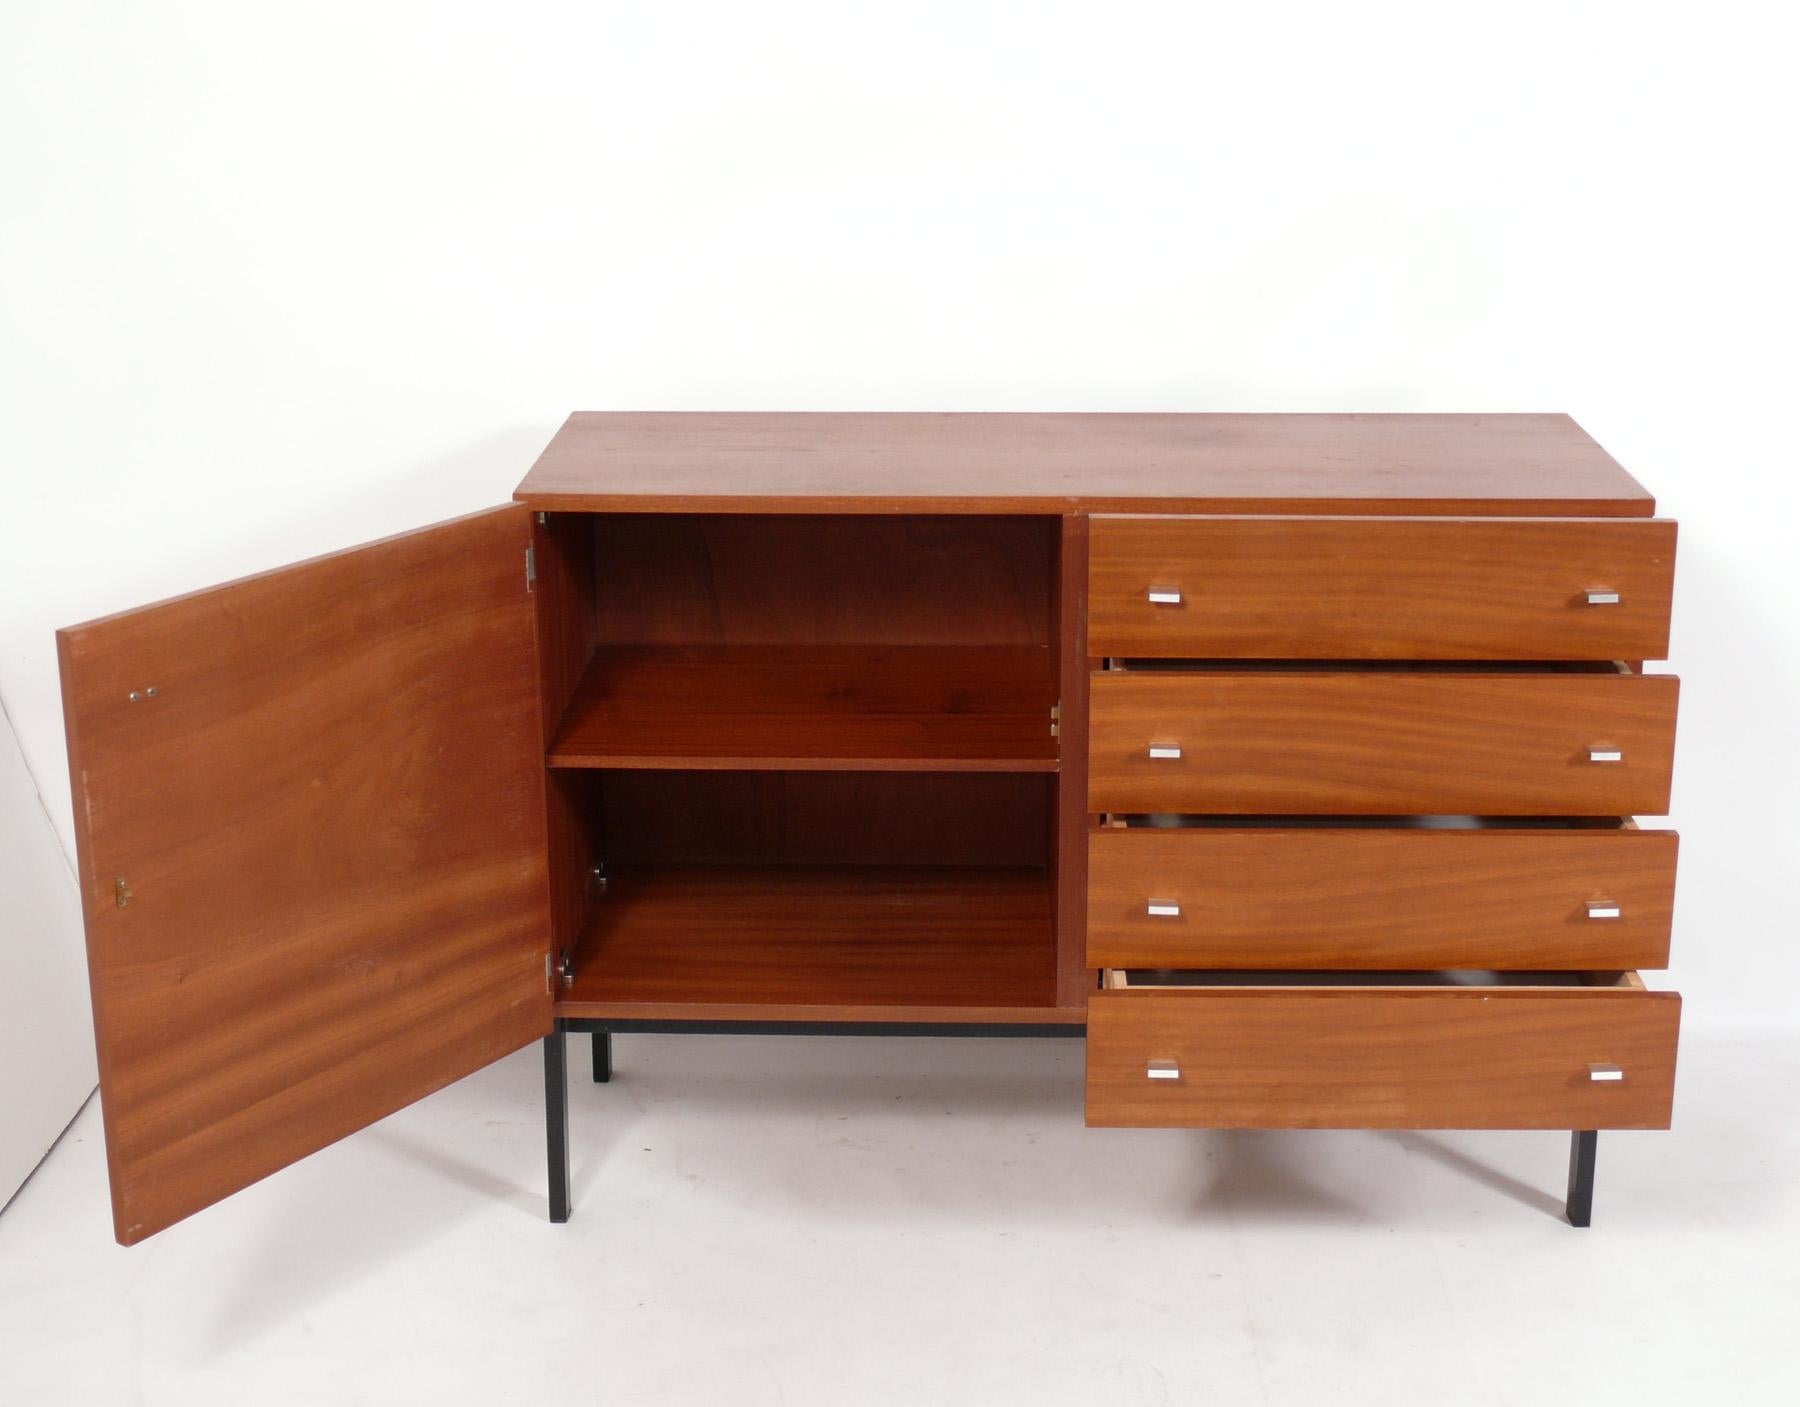 Dänische moderne Kommode, Dänemark, ca. 1960er Jahre. Dieses Möbelstück hat eine vielseitige Größe und kann als Kredenz, Schrank, Server oder Bar in einem Wohnbereich oder als Kommode in einem Schlafzimmer verwendet werden. Er bietet viel Stauraum